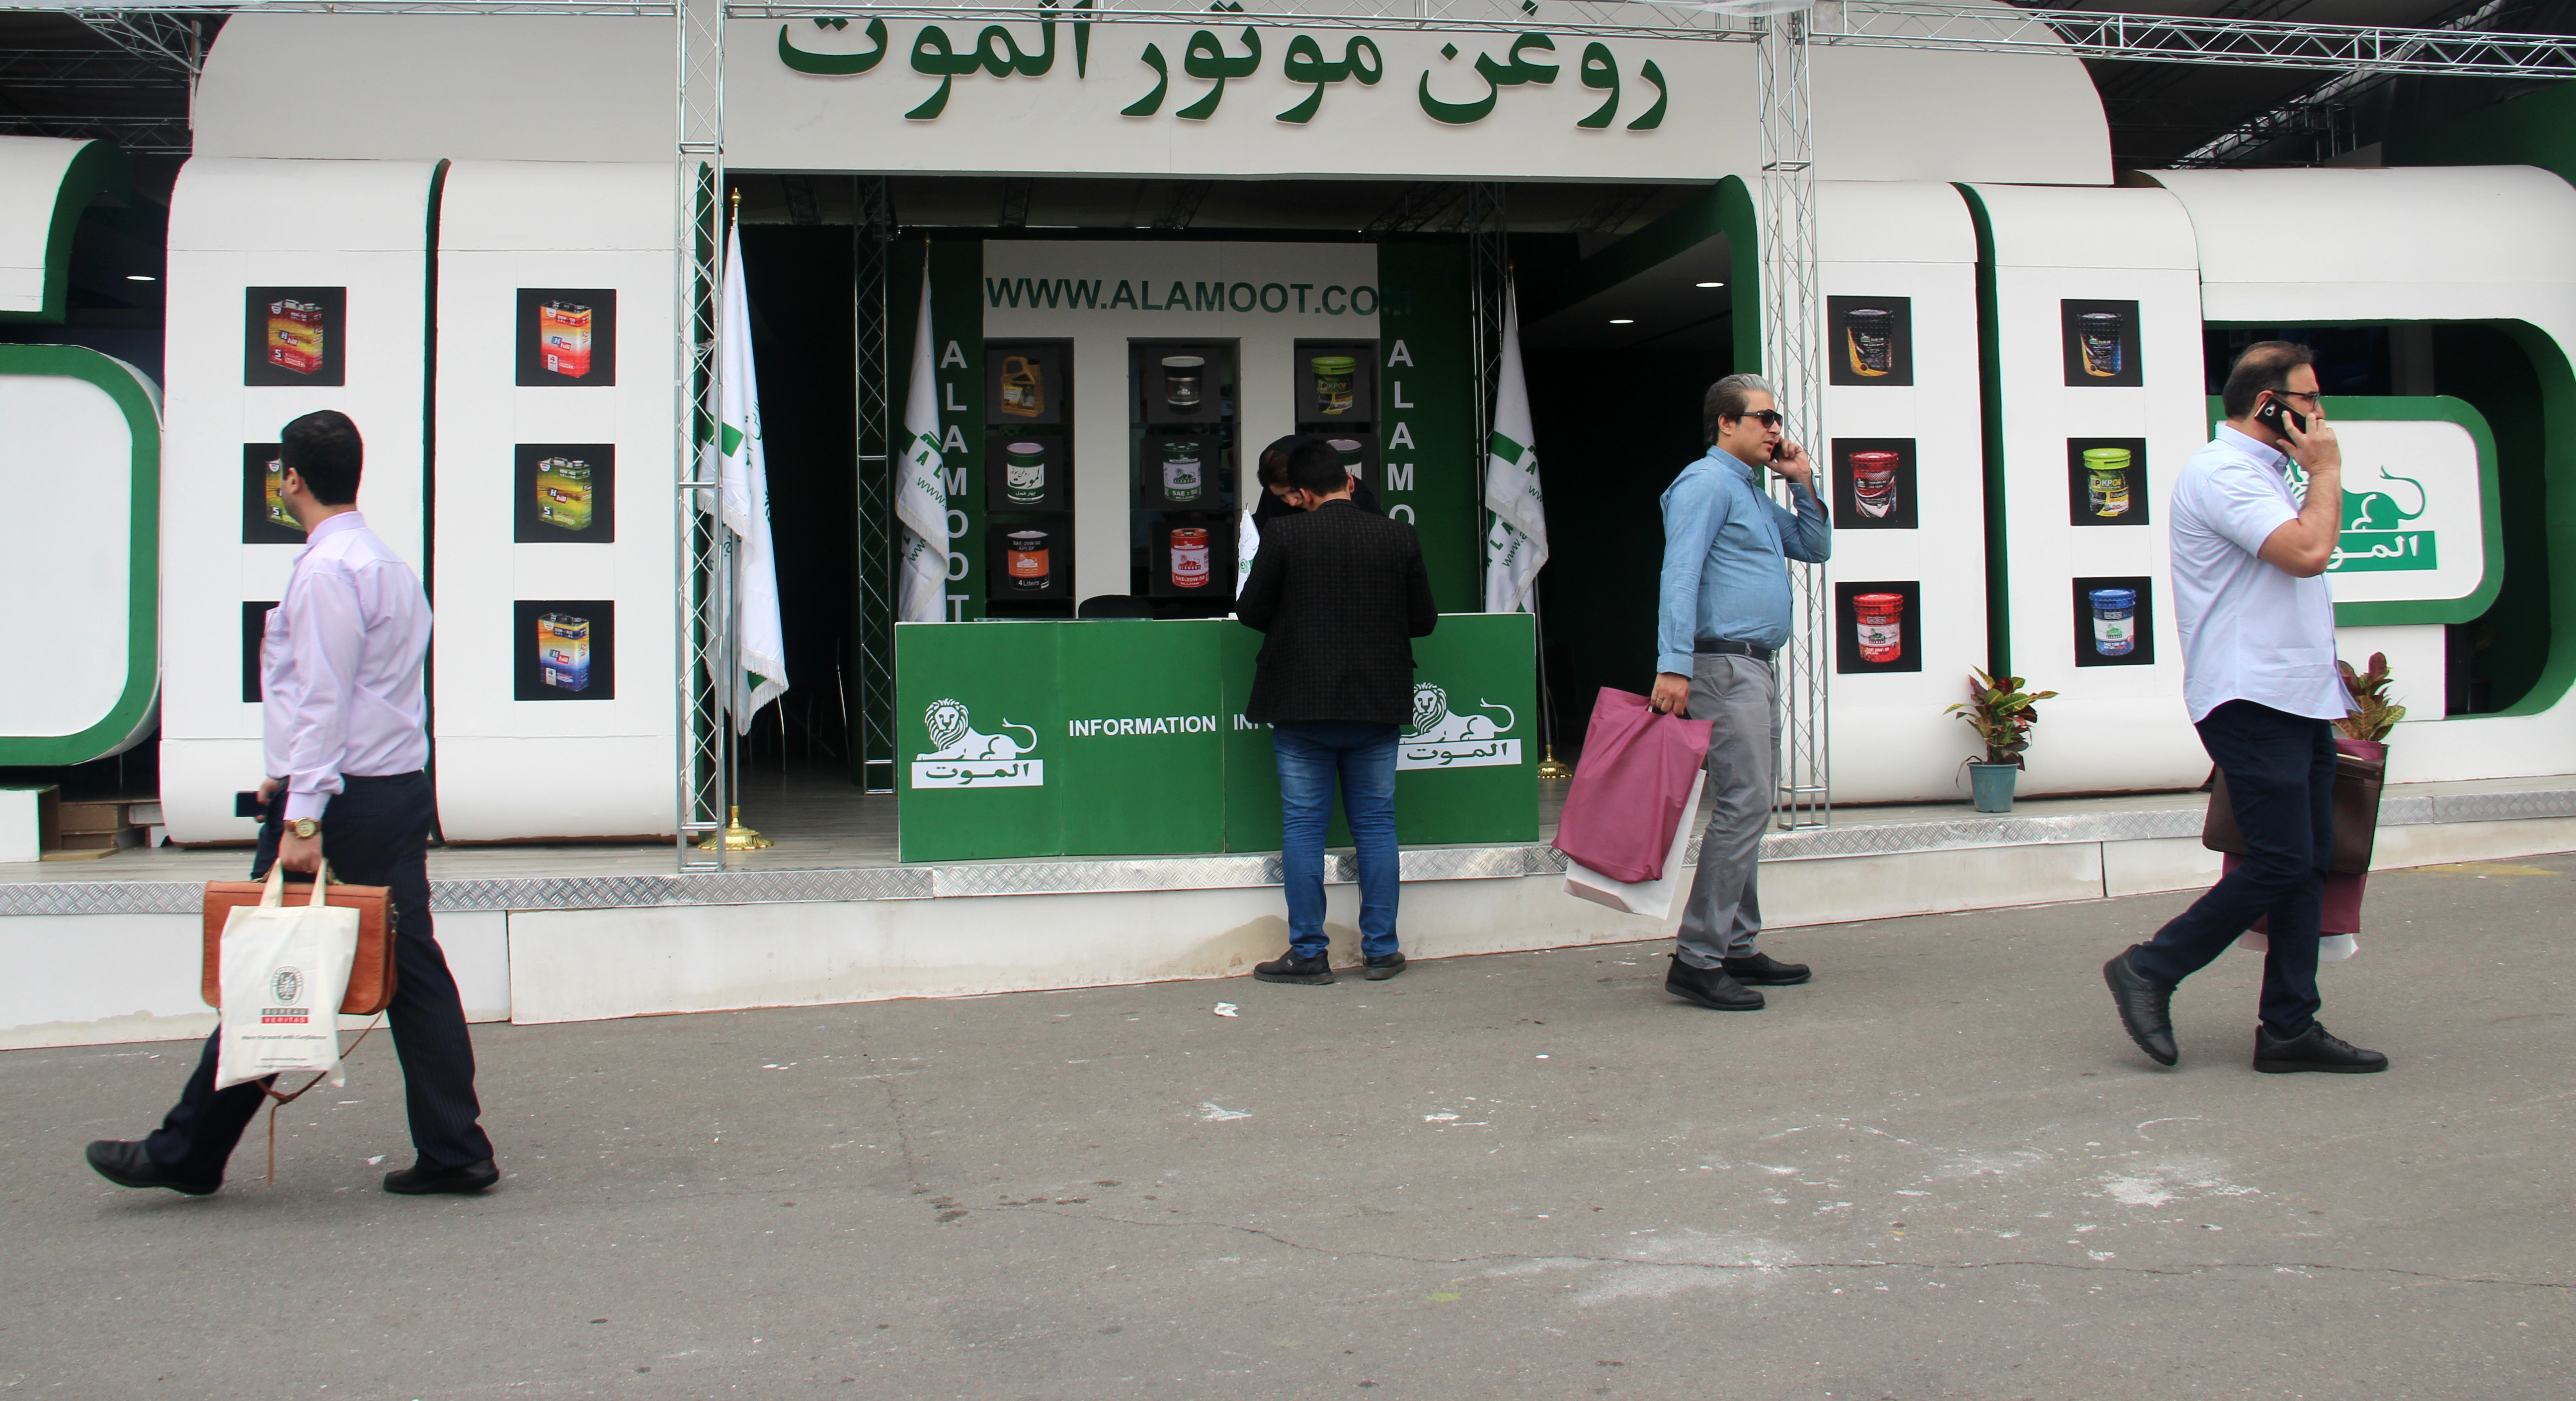 غرفه شرکت پالایش الموت دربیست و سومین نمایشگاه بین المللی نفت، گاز،پالایش و پتروشیمی.